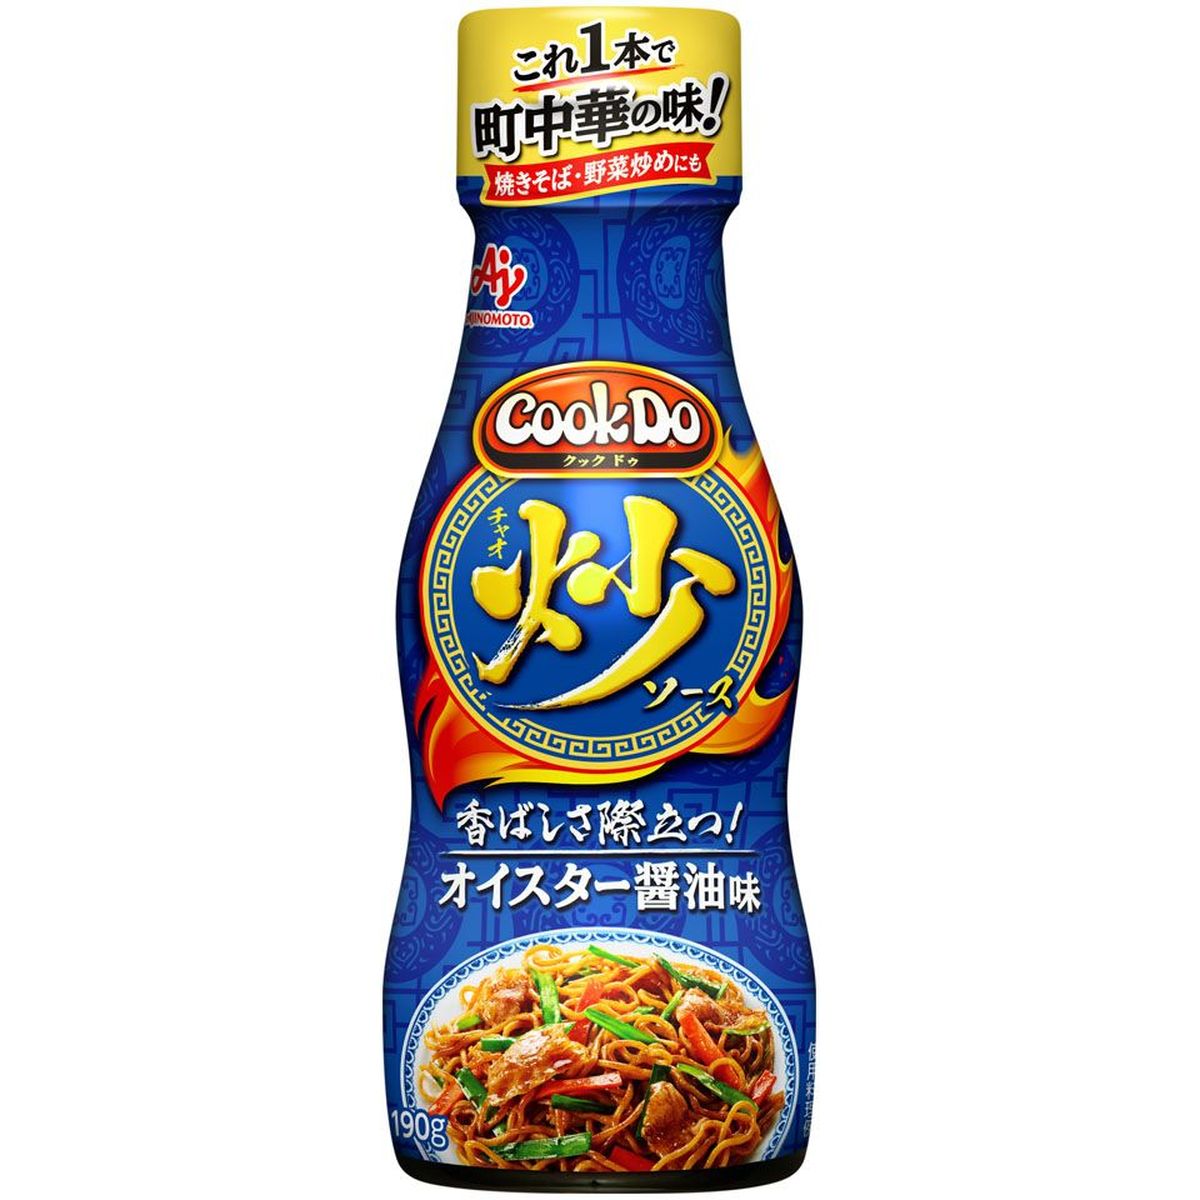 【12個入リ】味ノ素 CookDo 炒ソース 上海オイスター醤油味 190g